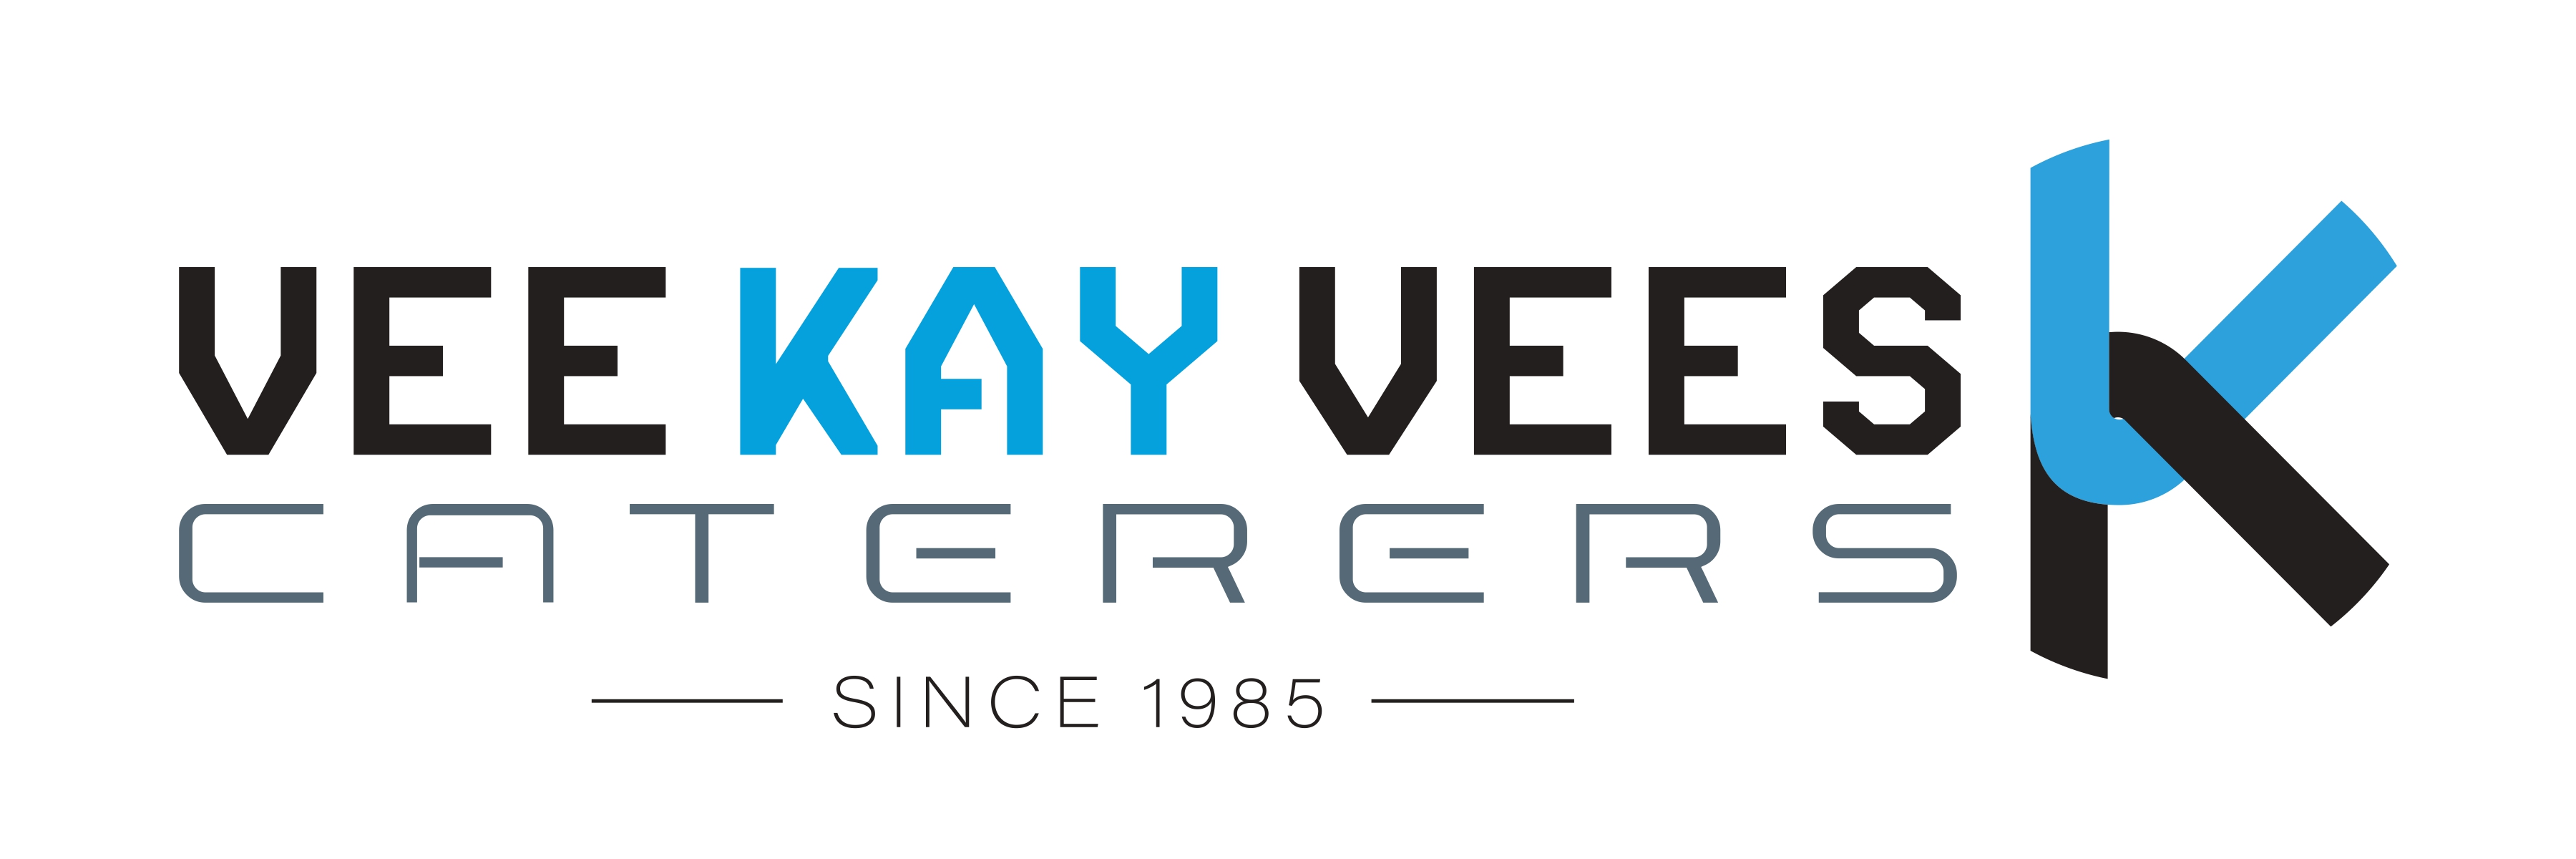 Vee Kay Vees Logo